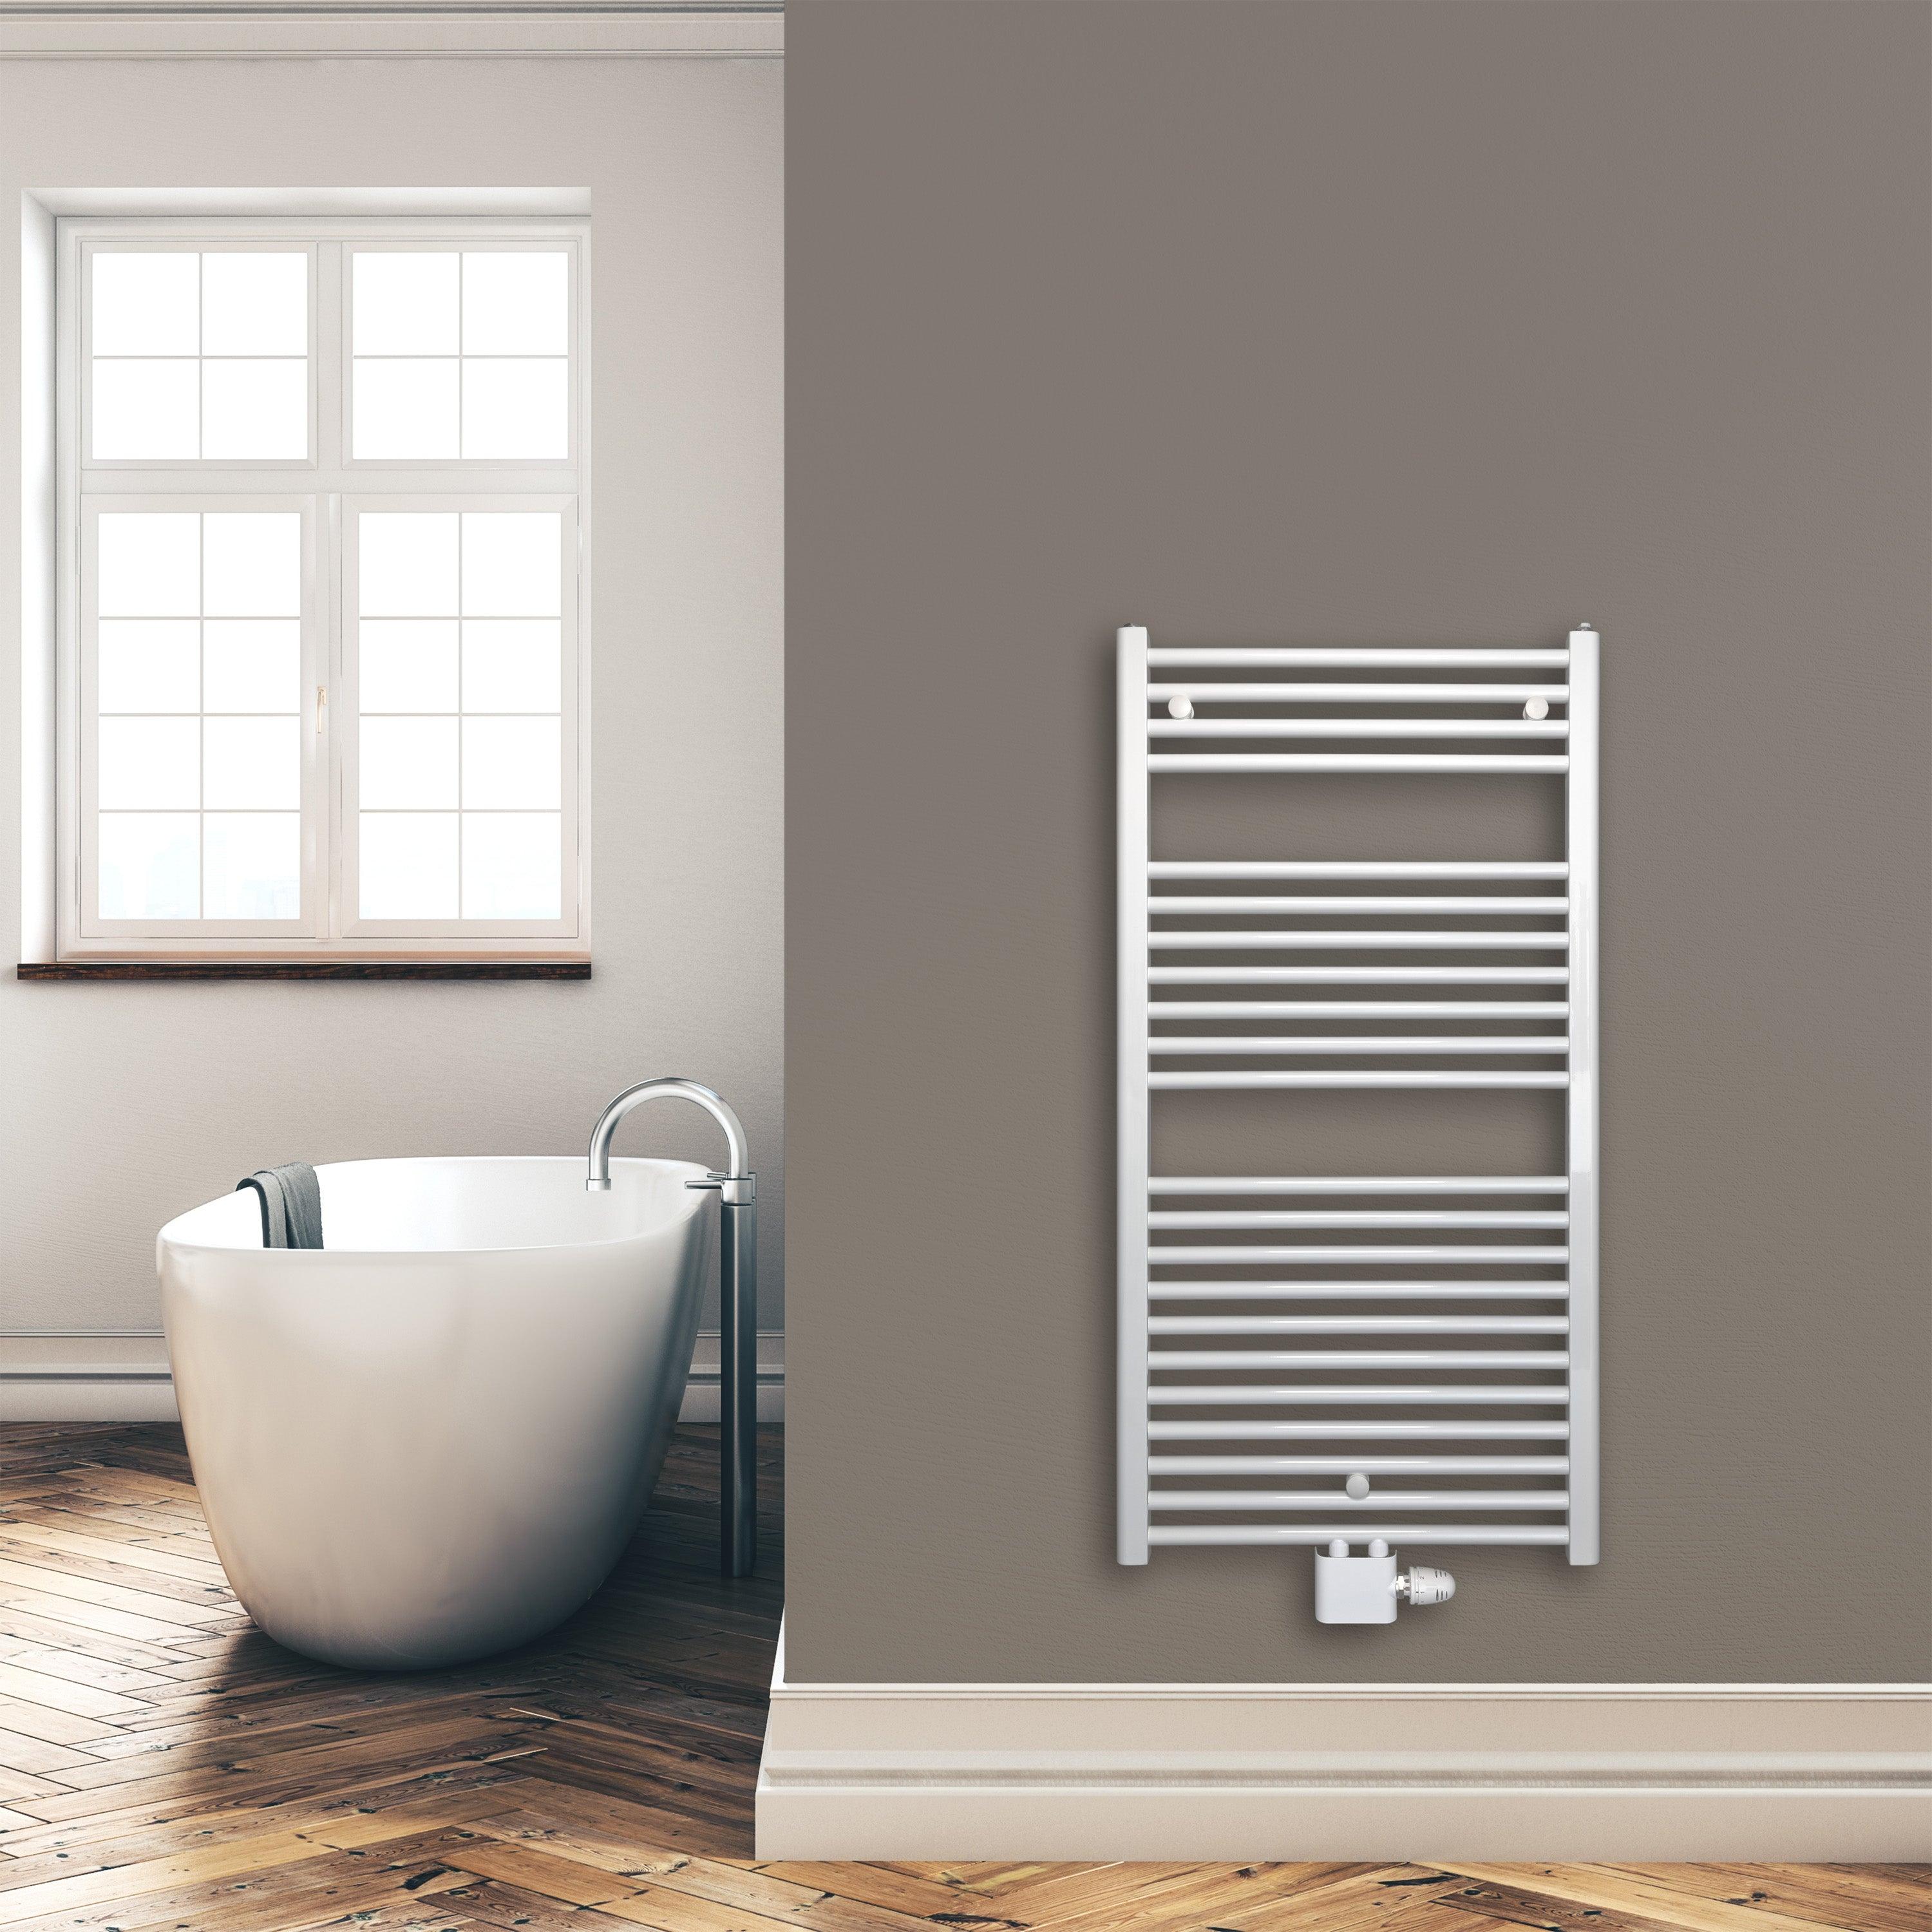 Badheizkörper 1160 x 600 mm gerade mit Mittenanschluss Handtuchhalter Badezimmer Heizung Handtuchwärmer weiß Montagebeispiel - heizkoerper.shop